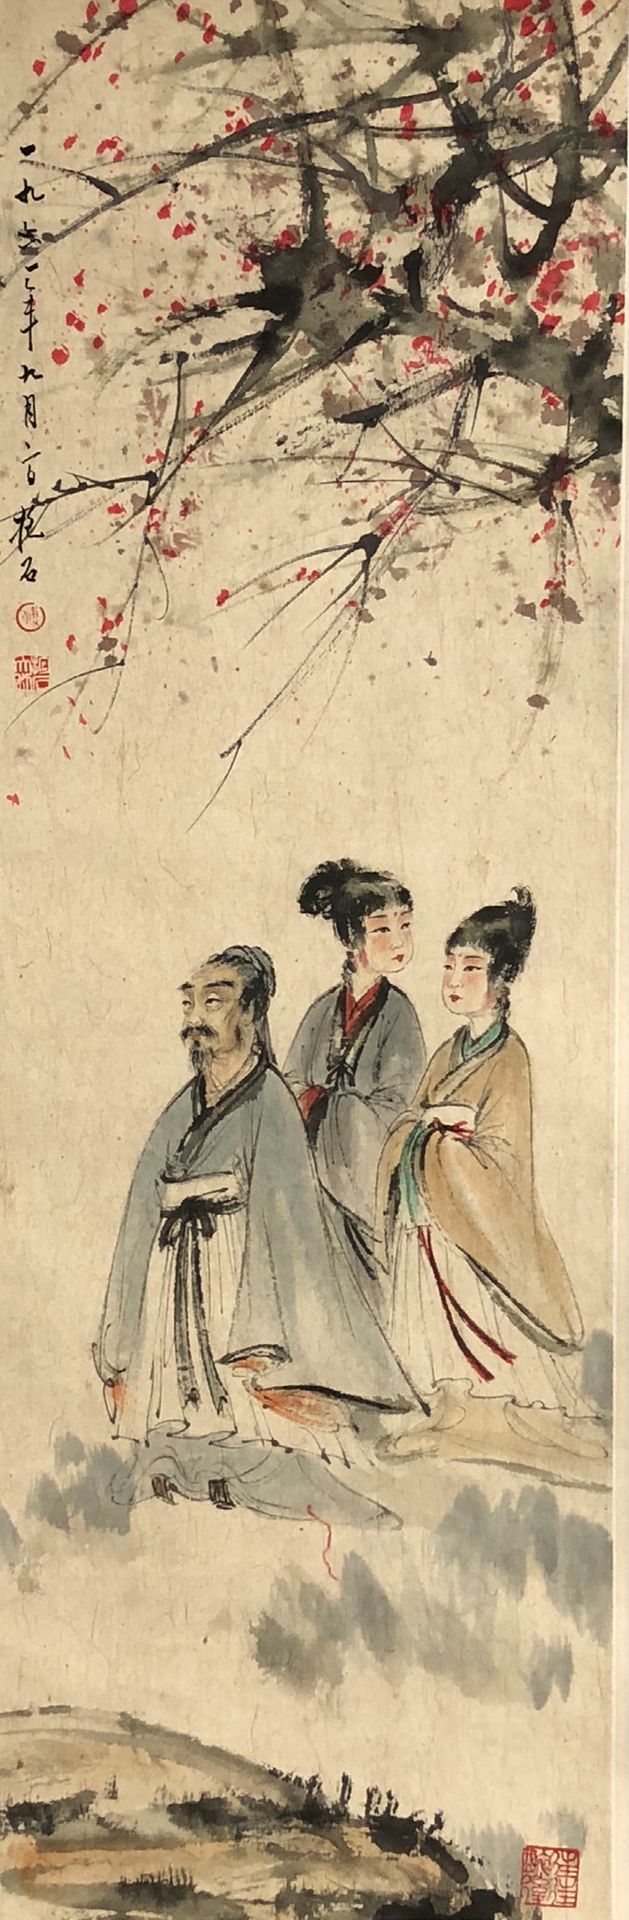 CHINE Peinture sur rouleau encre et couleurs représentant trois personnages